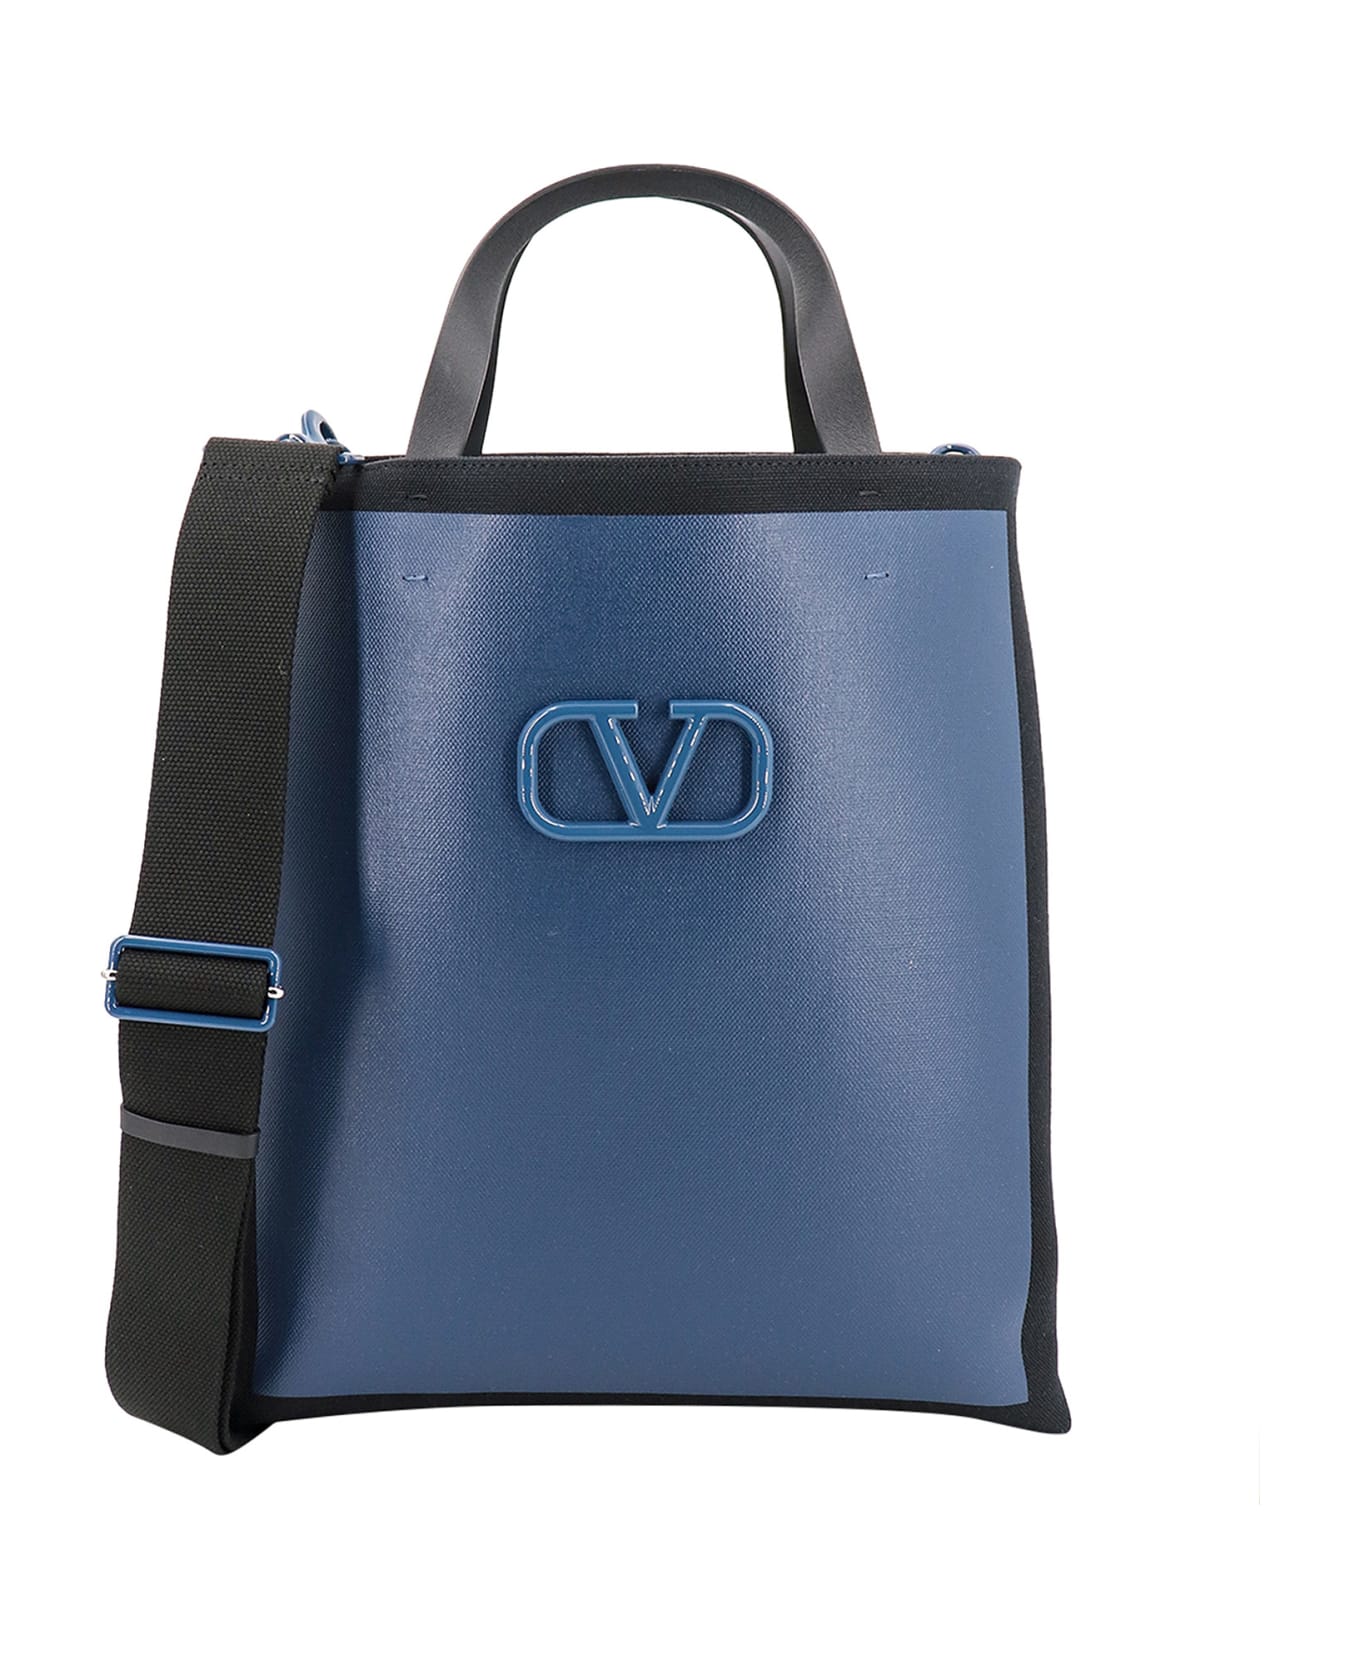 Valentino Garavani Handbag - Black